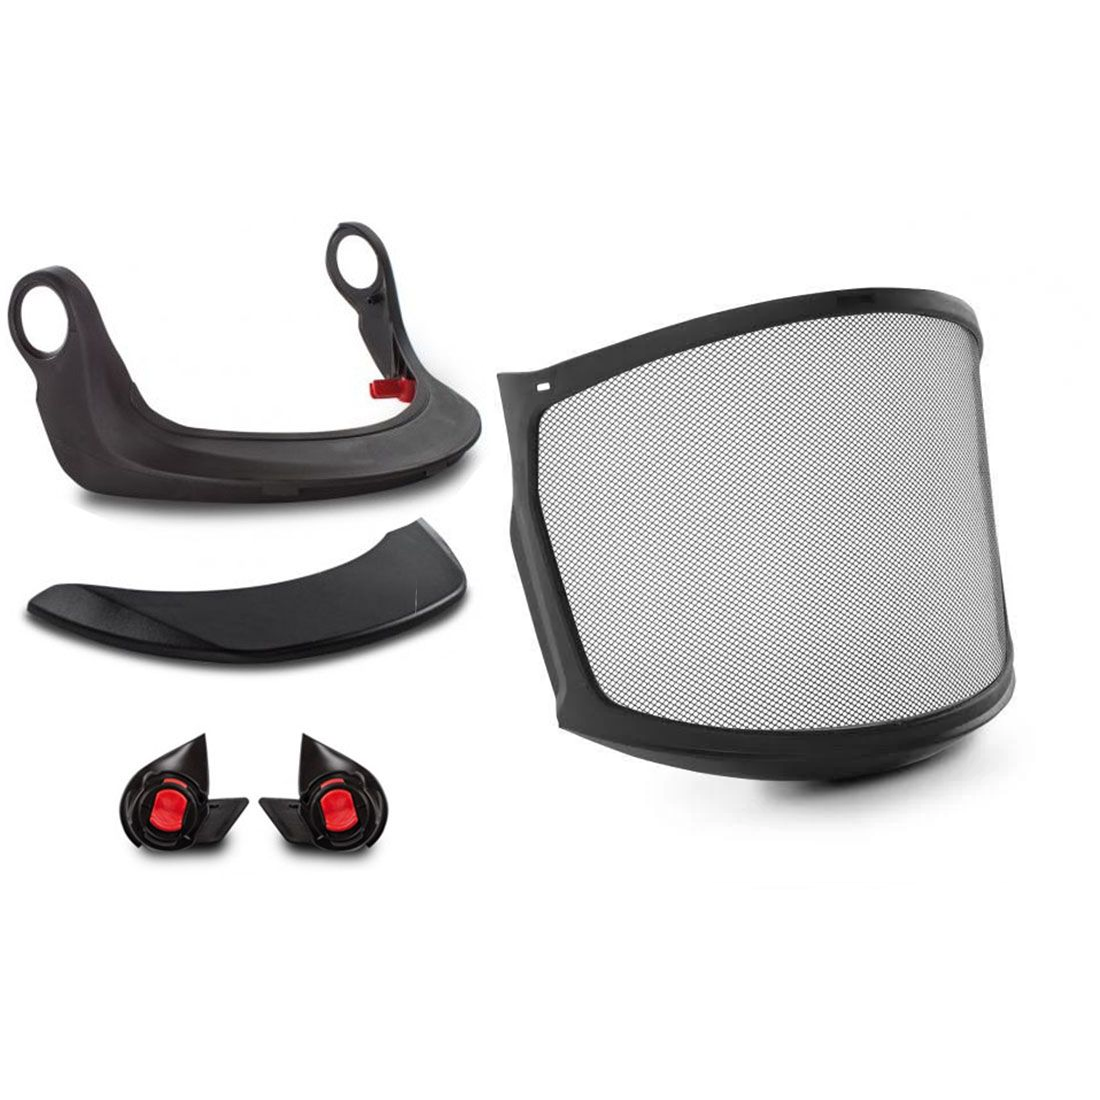 Kask Zen FF - Full Face Visor Kit from Columbia Safety